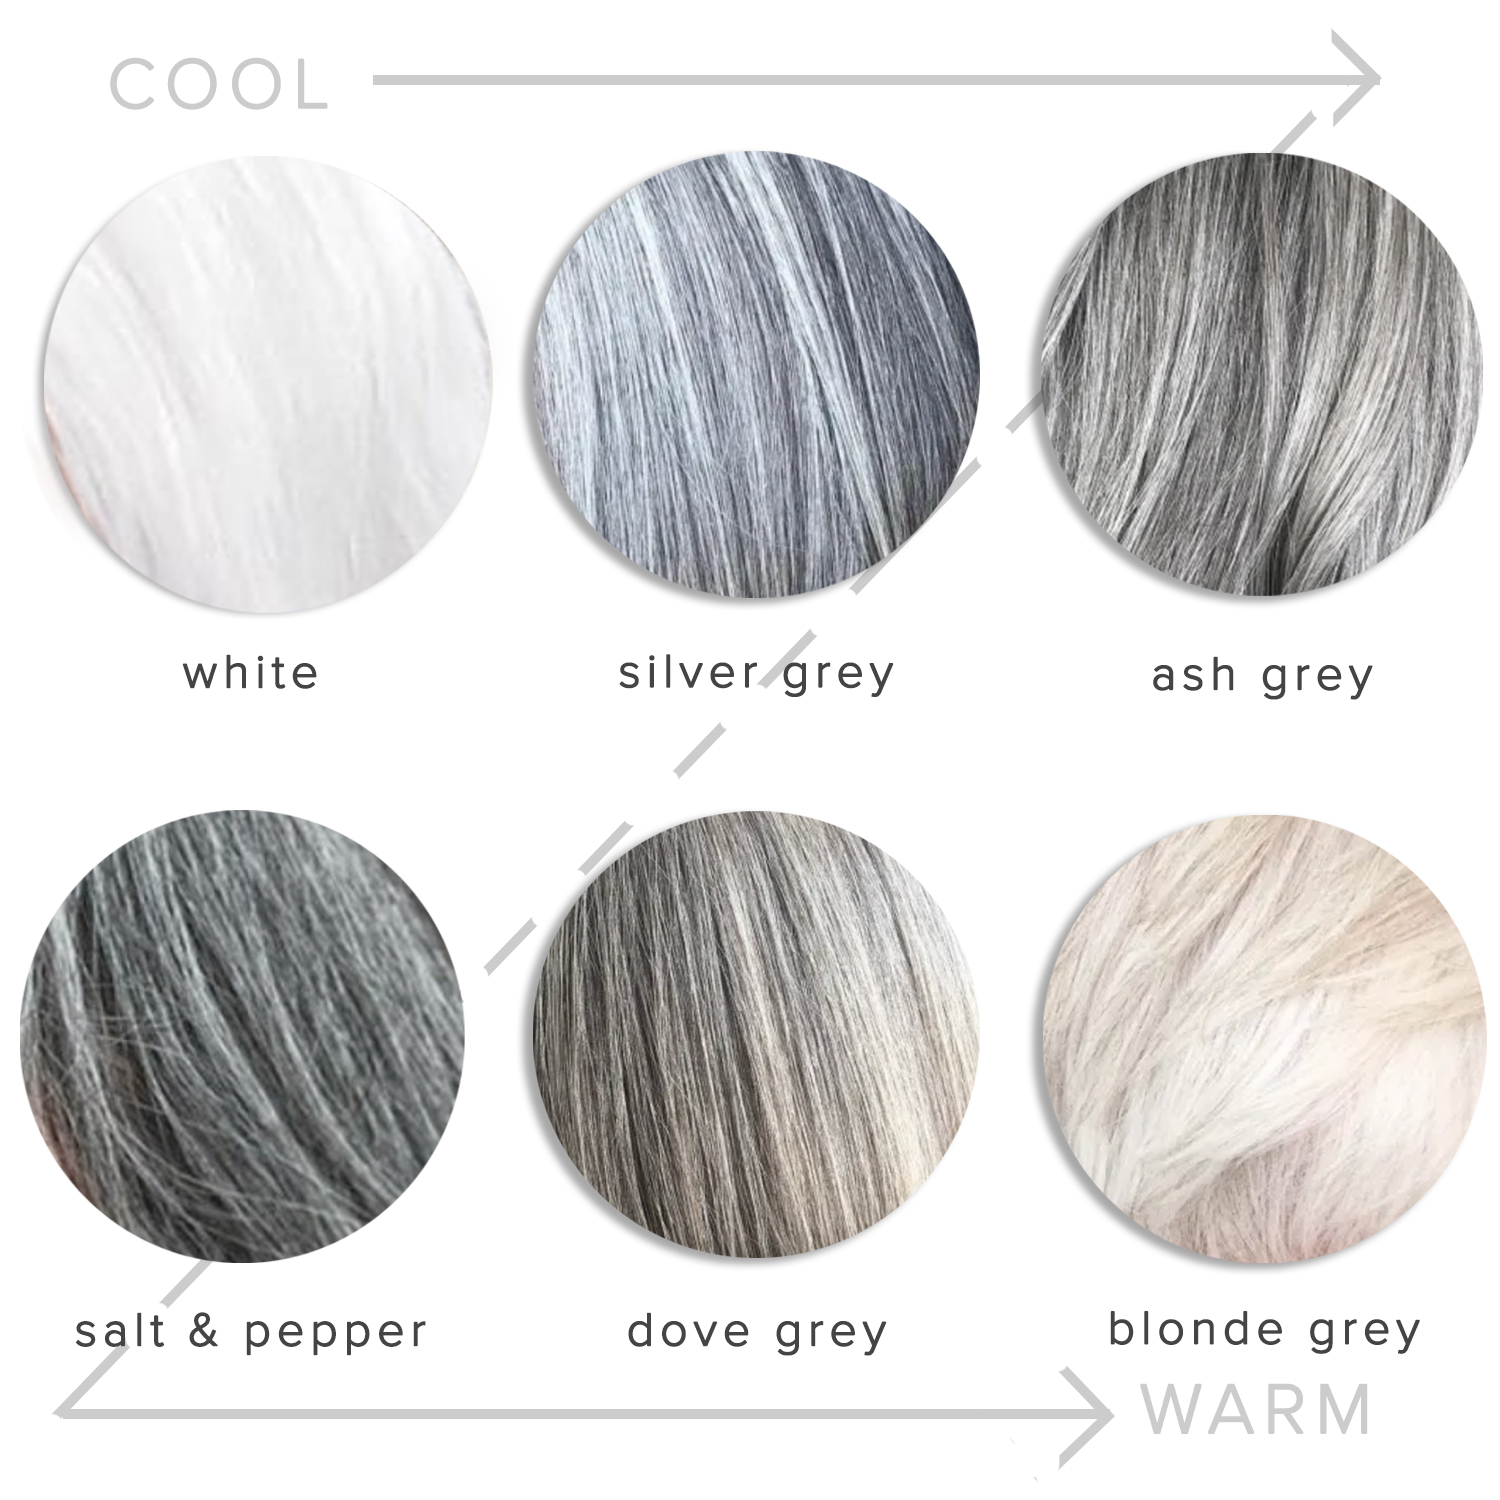 grey hair colour chart grey hair color hair color chart - grey hair on ...